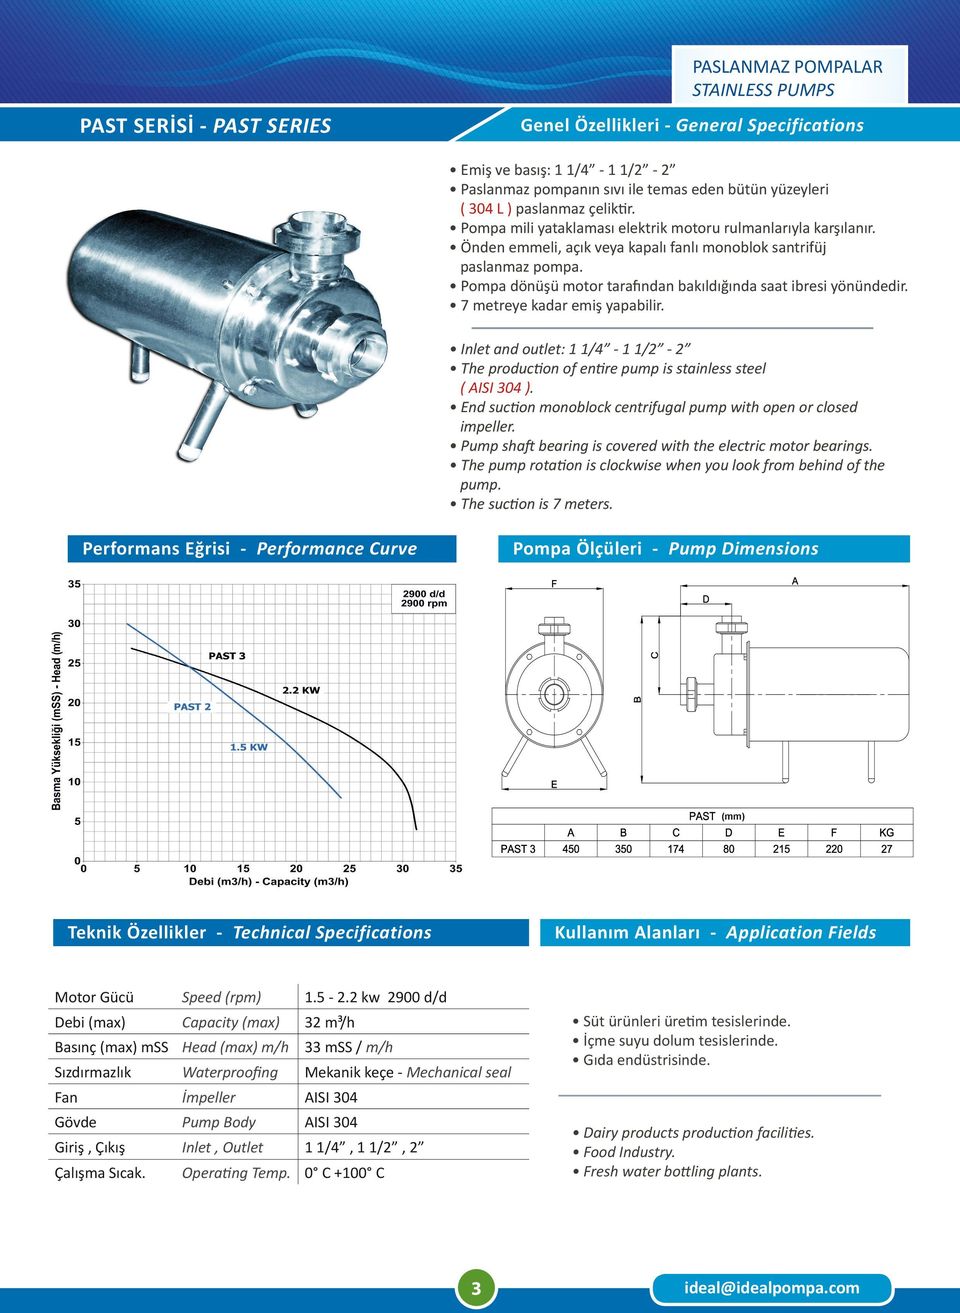 2 kw 2900 d/d Debi (max) Capacity (max) 32 m³/h Basınç (max) mss Head (max) m/h 33 mss / m/h Fan İmpeller AISI 304 Gövde Pump